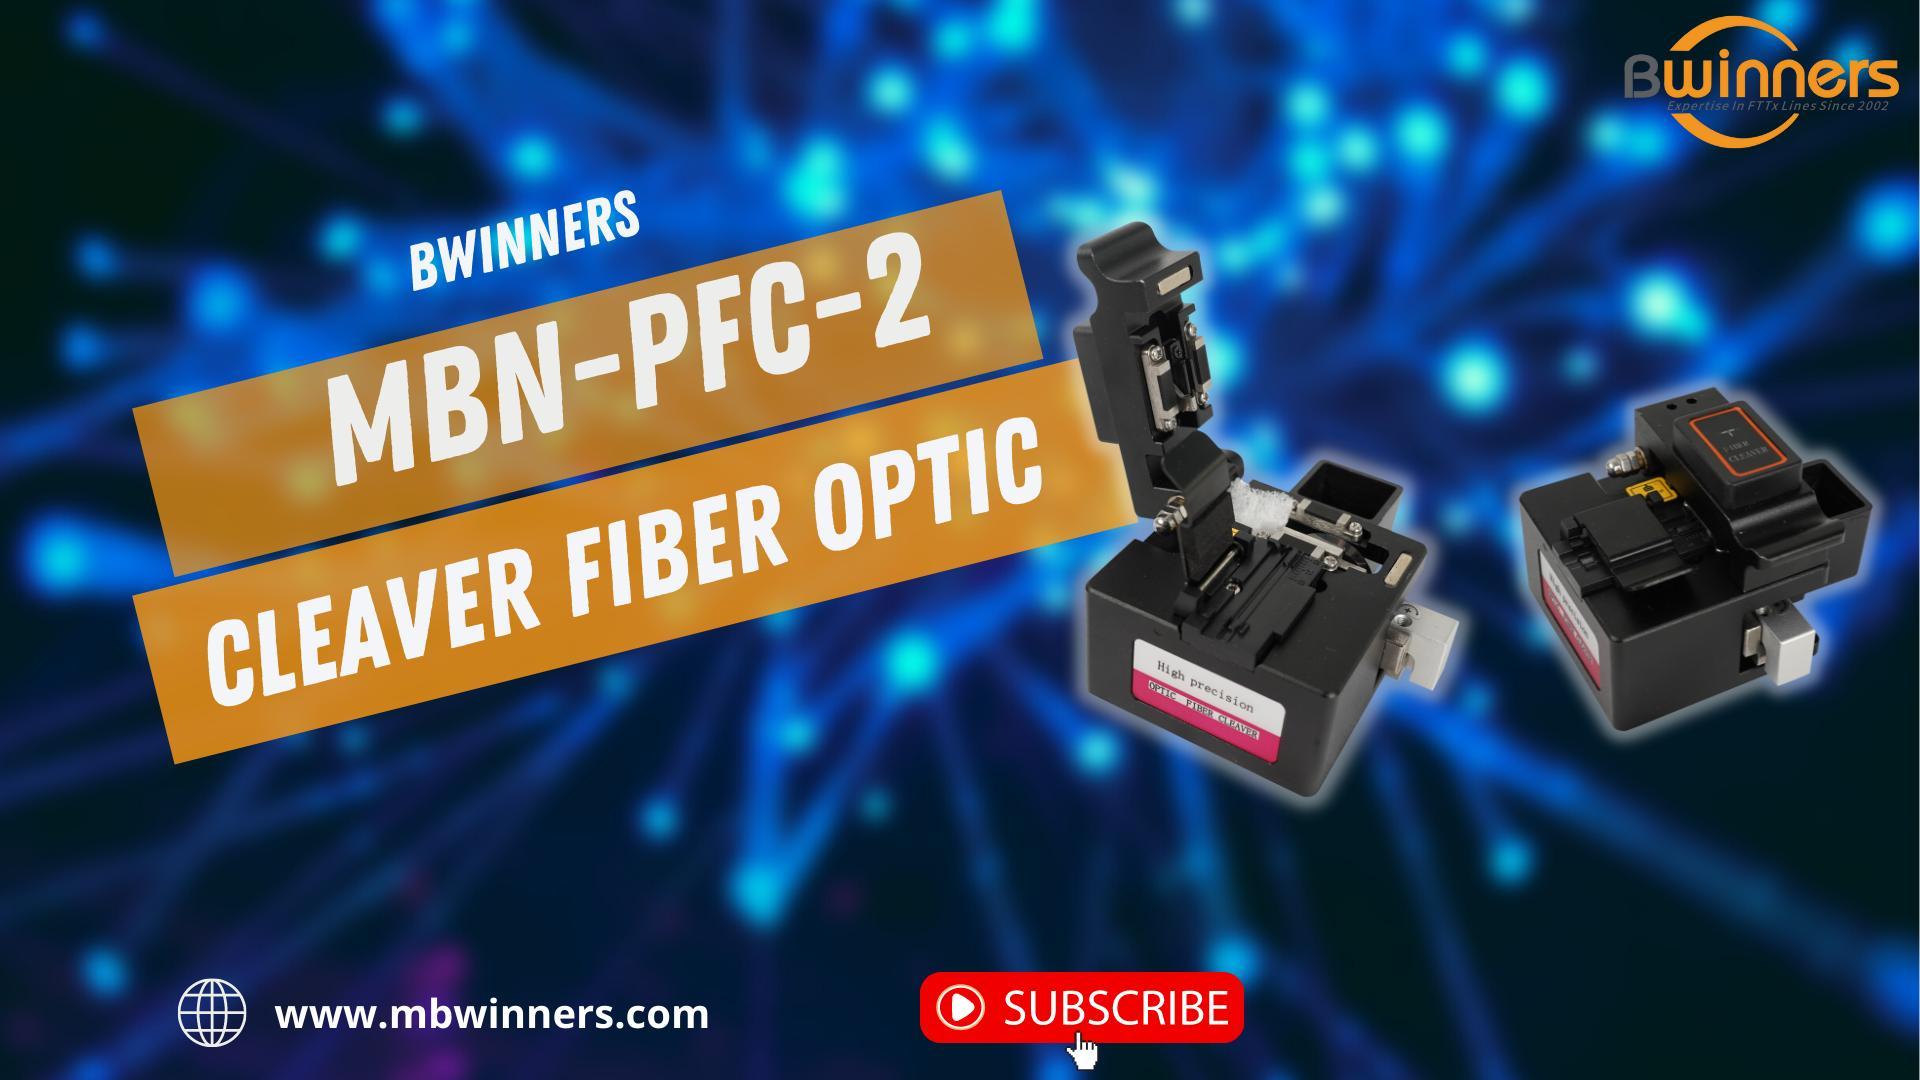 MBN-PFC-2 Cleaver Fiber Optic